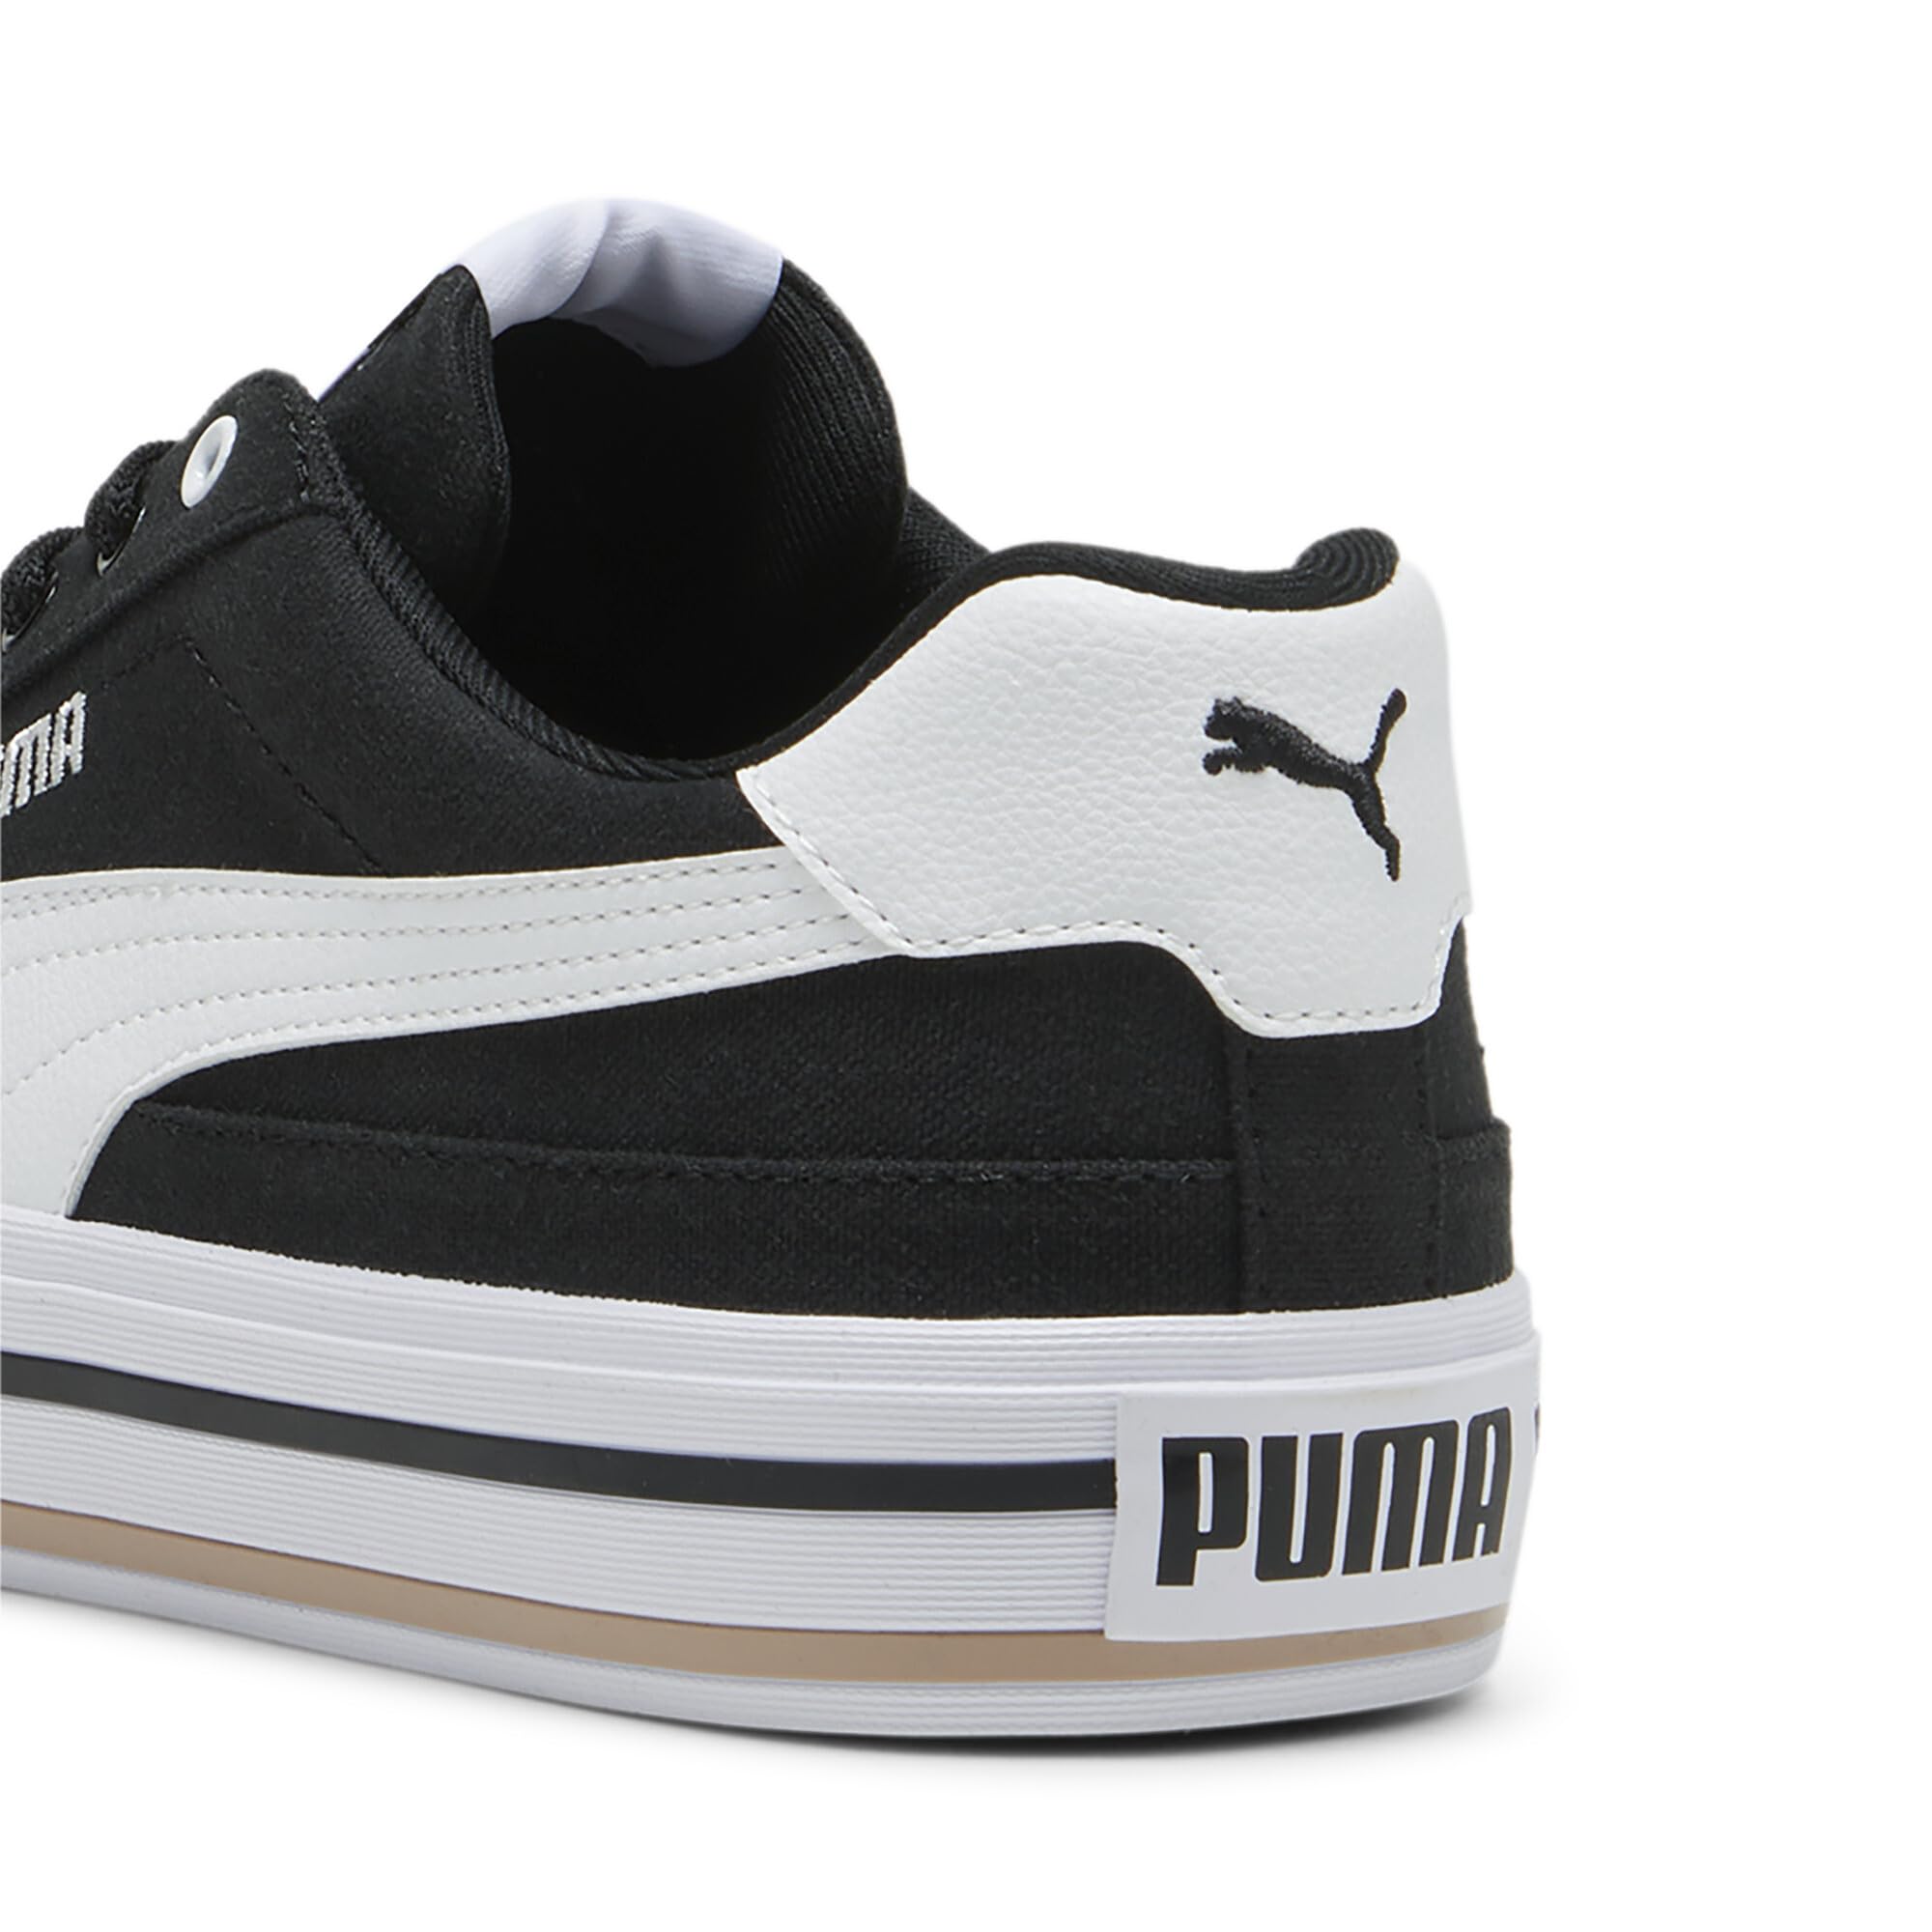 PUMA Men's Court Classic Vulc Sneaker